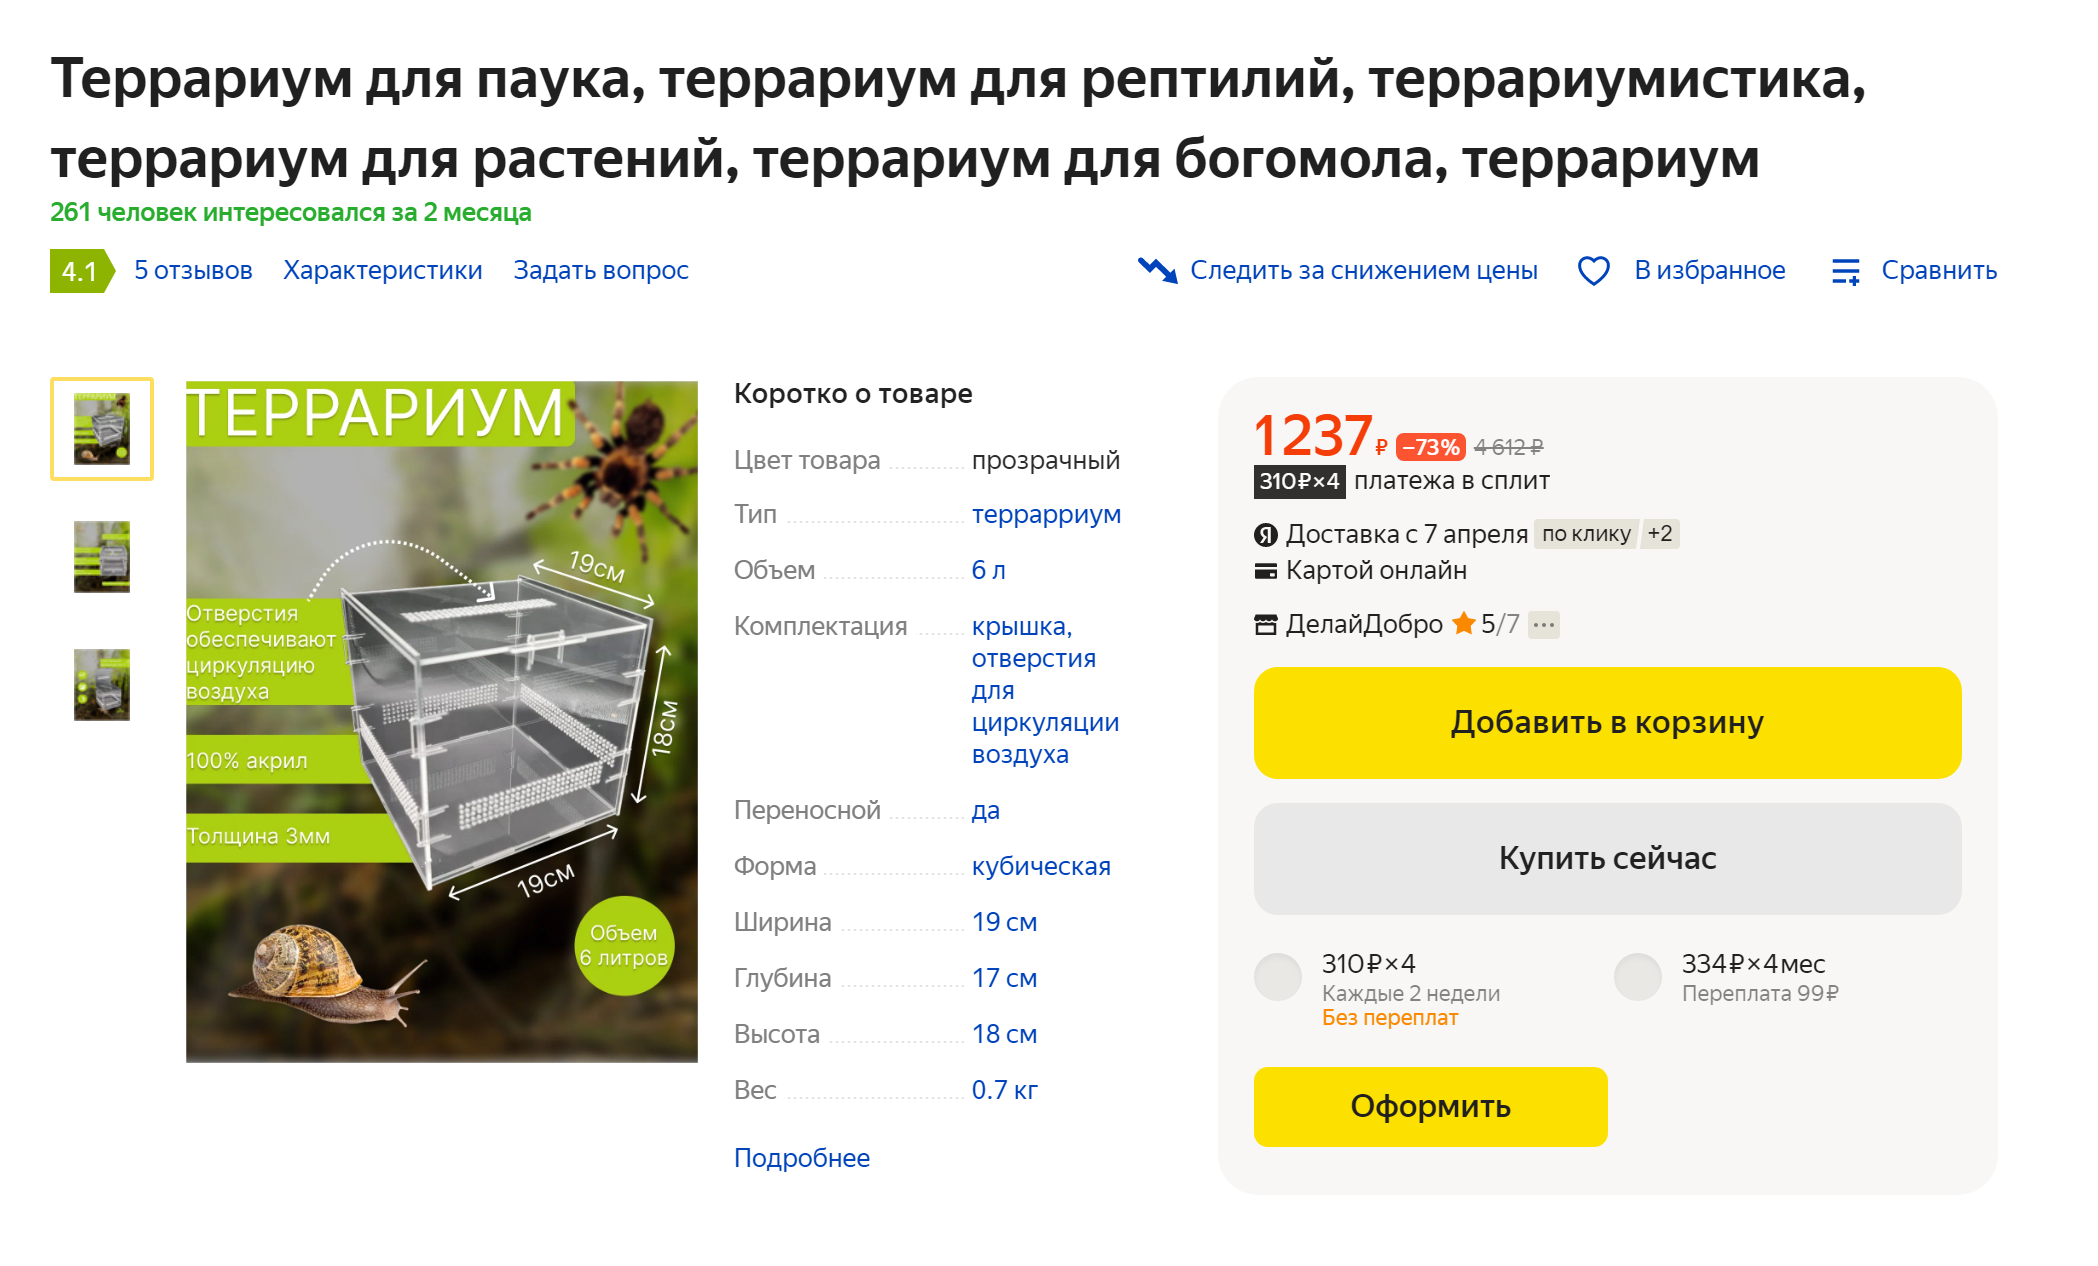 В интернете можно найти и пластиковые террариумы, подходящие для пауков. Стоить такой будет почти в два раза дешевле. Источник: market.yandex.ru